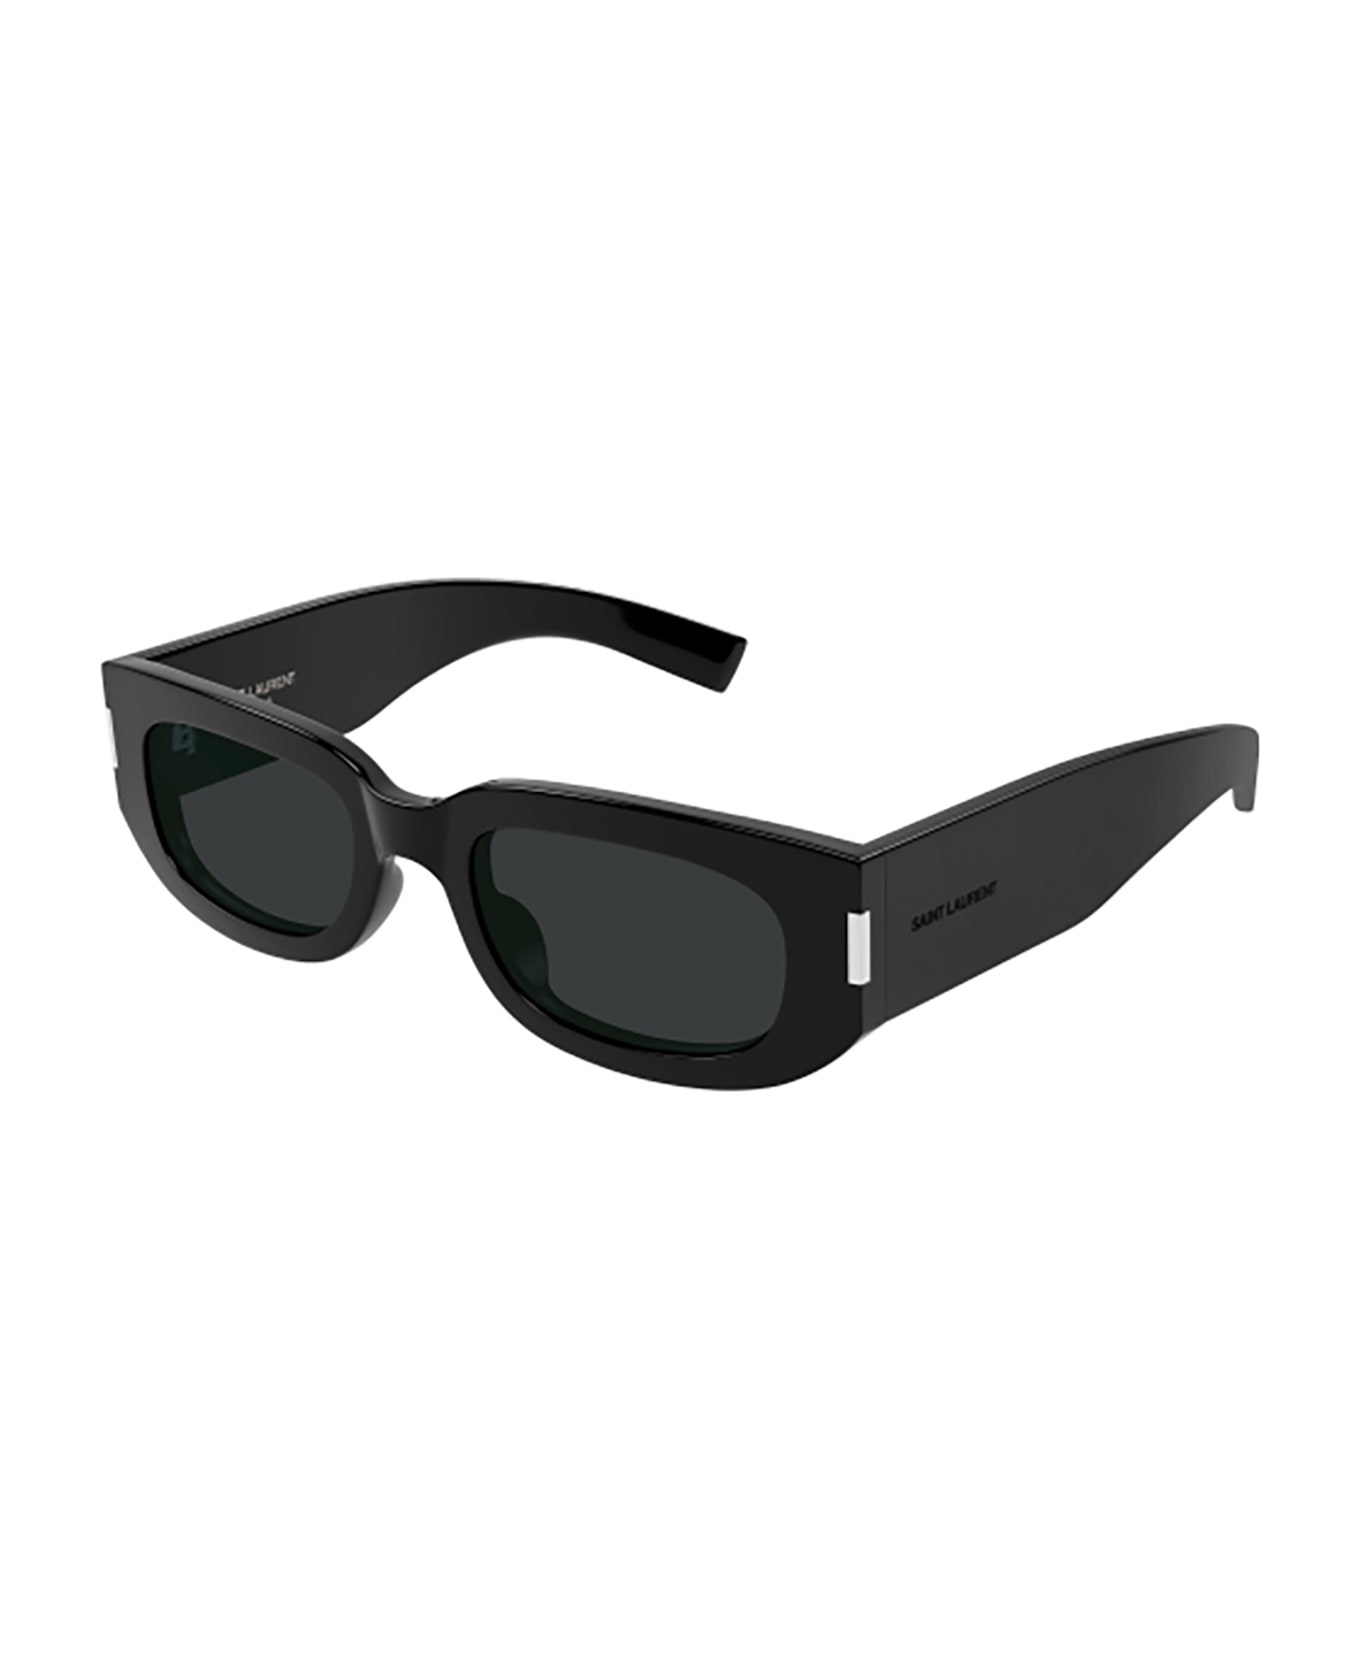 Saint Laurent Eyewear SL 697 Sunglasses - Black Black Black サングラス